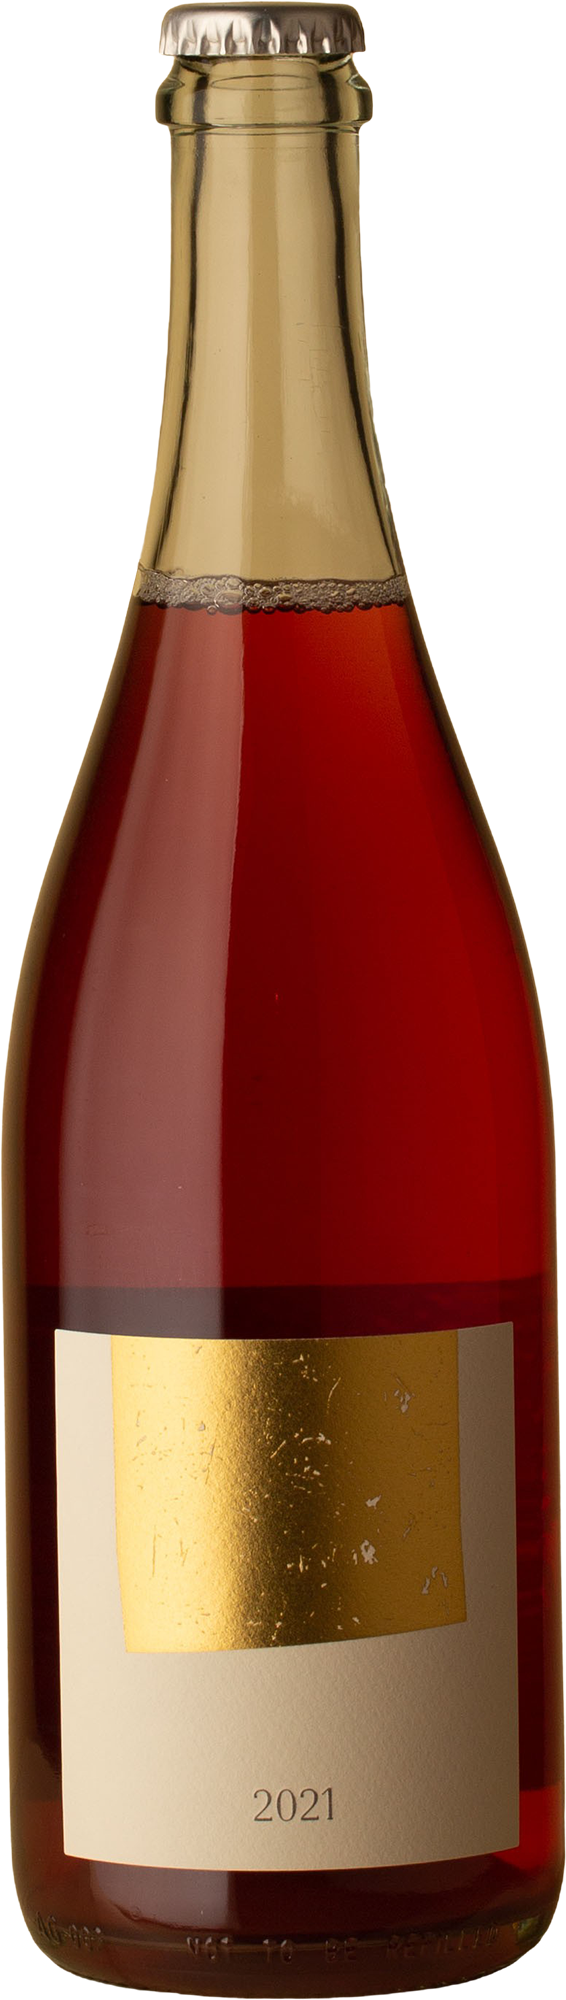 Nick Spencer - Rosé Pet Nat 2021 Sparkling Wine